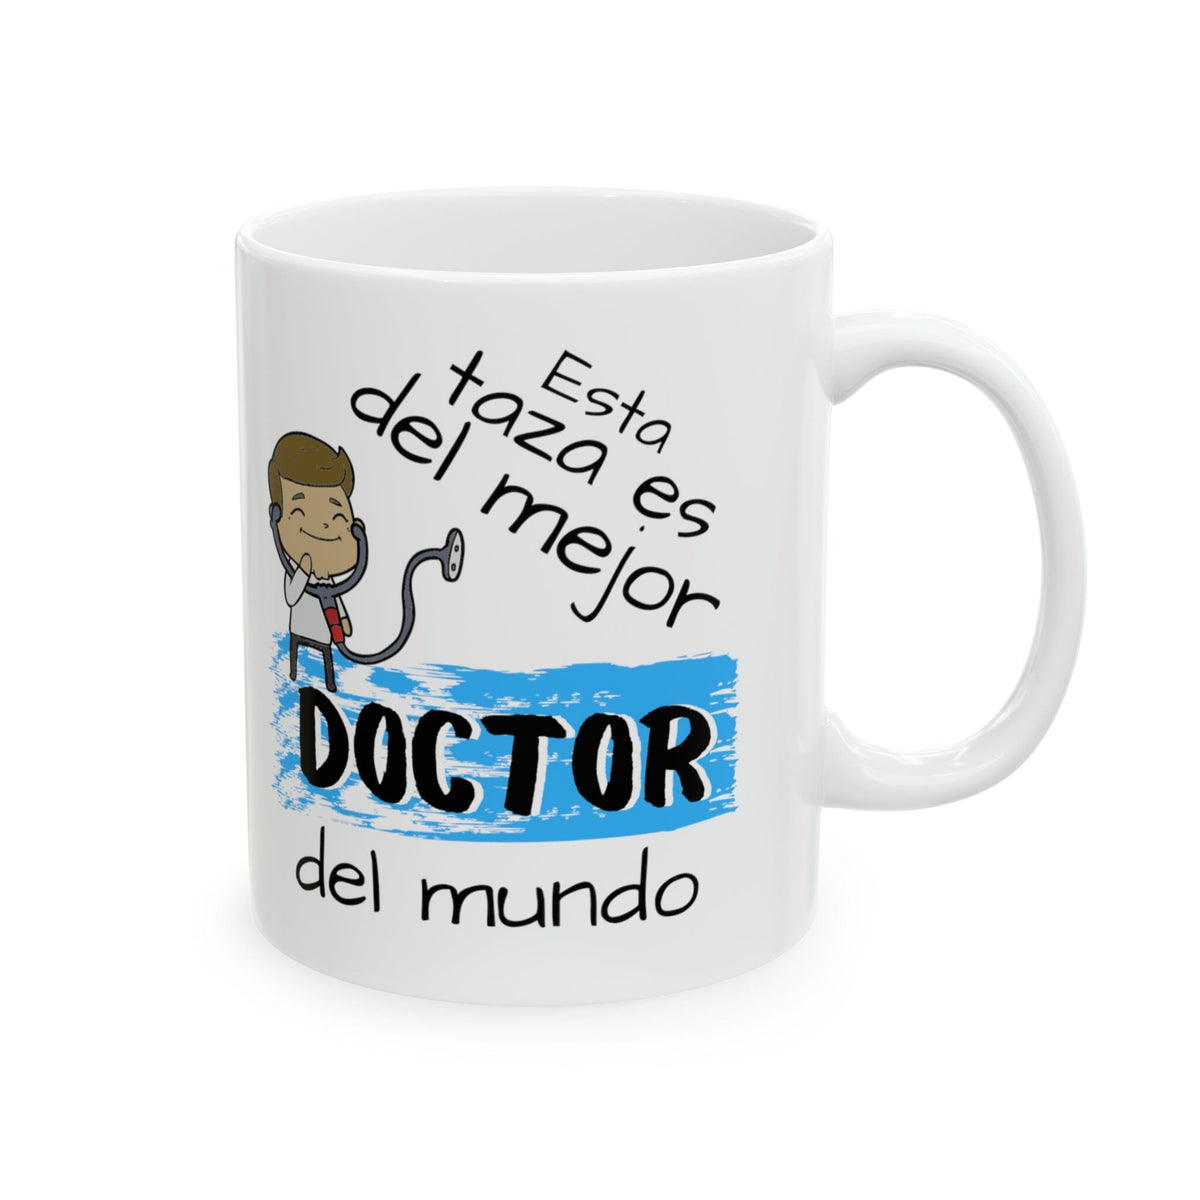 Esta taza es del Mejor Doctor...! Taza regalo doctor. 11-15onzas Mug Printify 15oz 